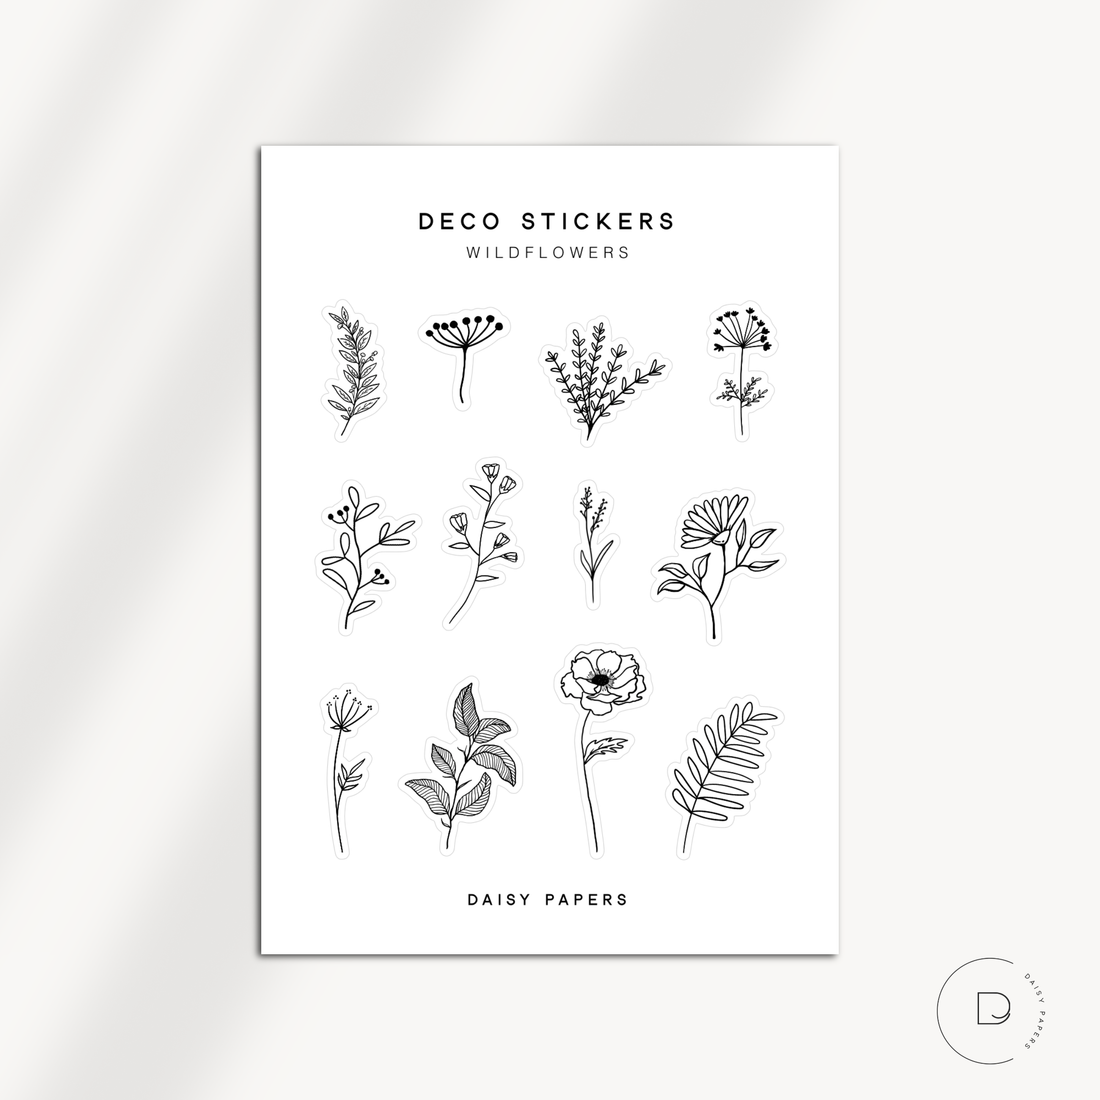 DECO STICKERS - WILDFLOWERS